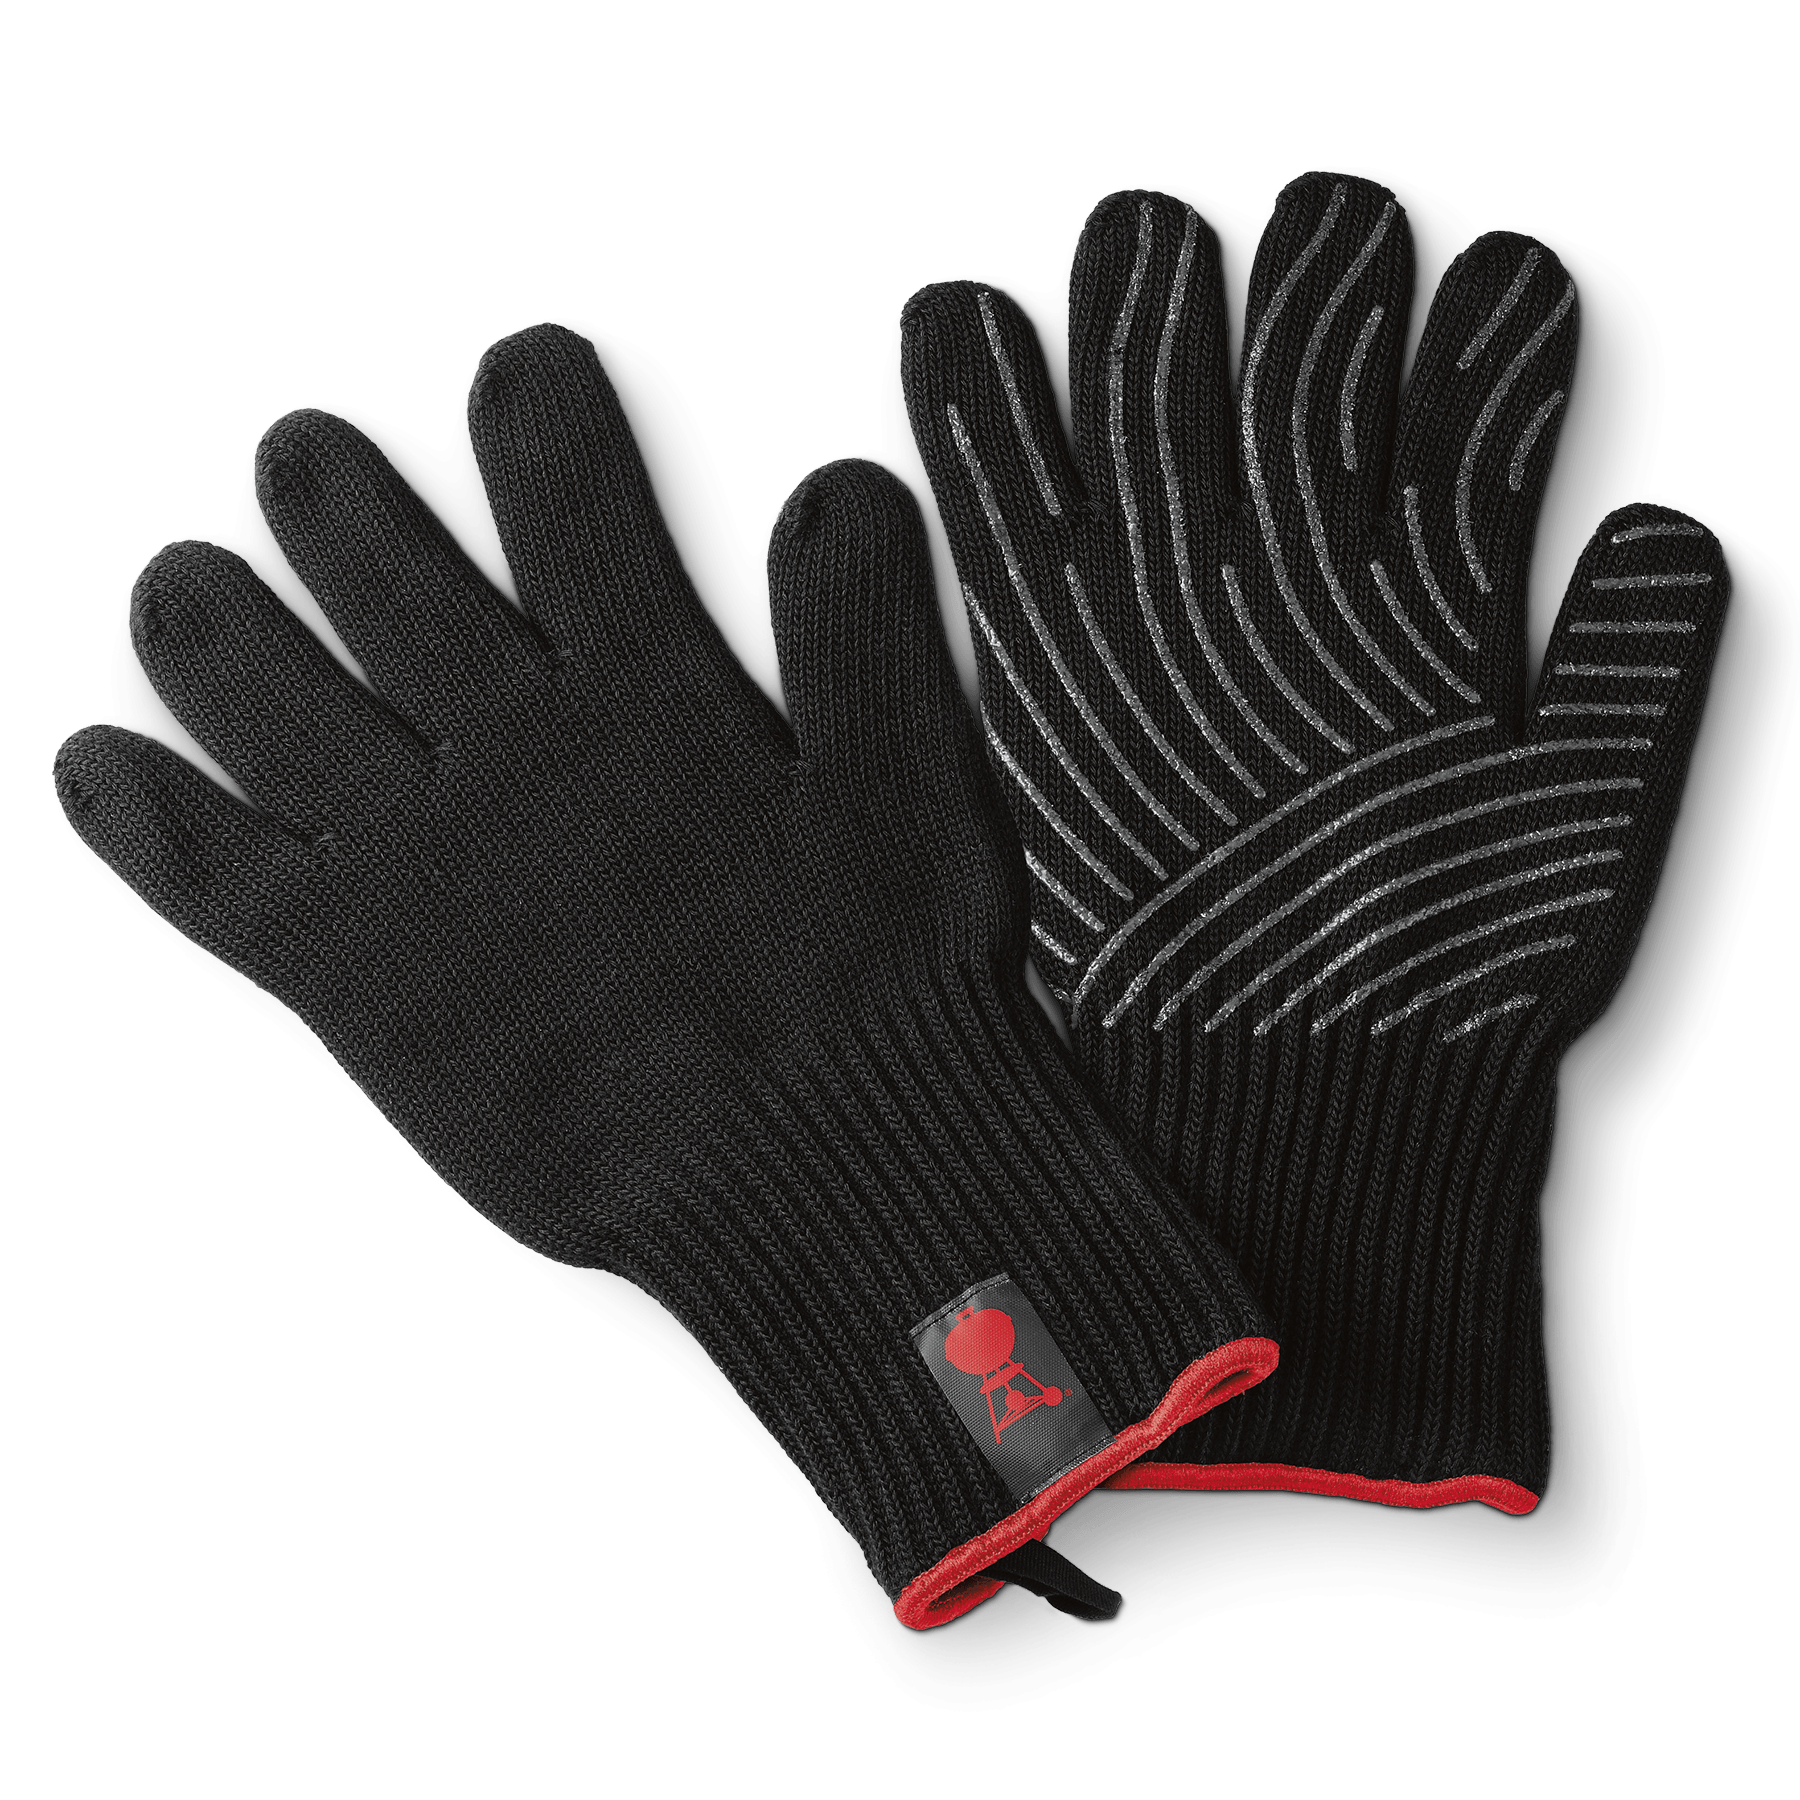 Weber Grilovací rukavice Premium, 1 pár, vel. L/XL, 6670